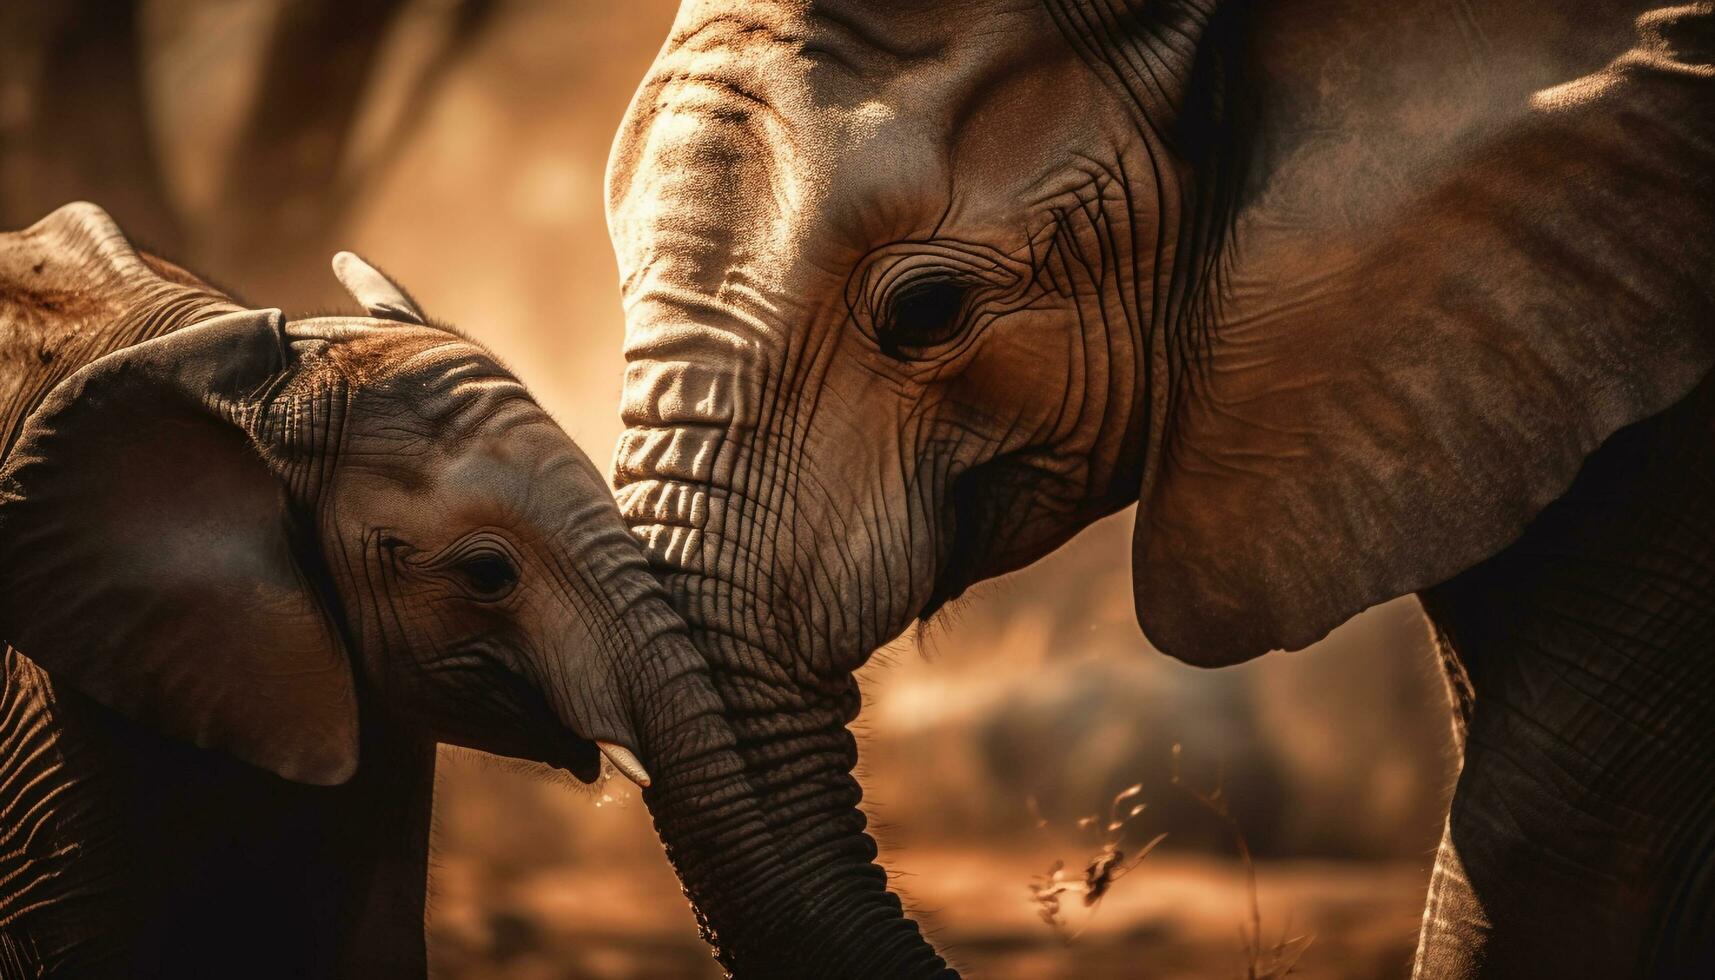 One big elephant Stock Photo by ©coffeemill 105056122